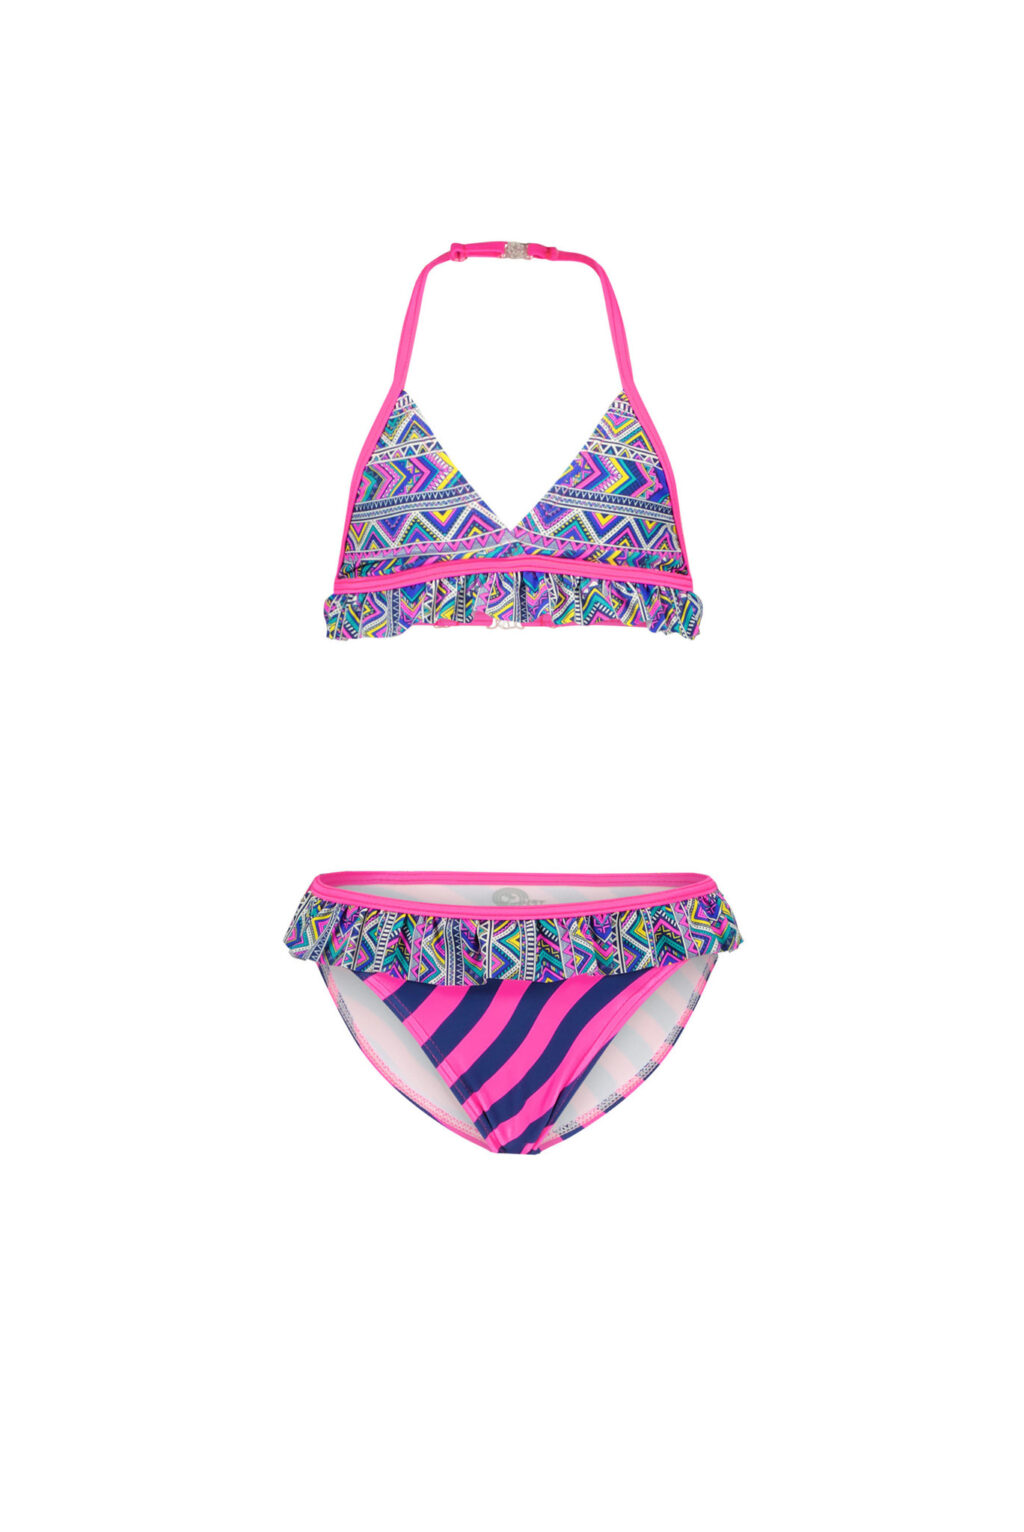 Just Beach Meisjes bikini triangel - Tropic aztek ~ Spinze.nl